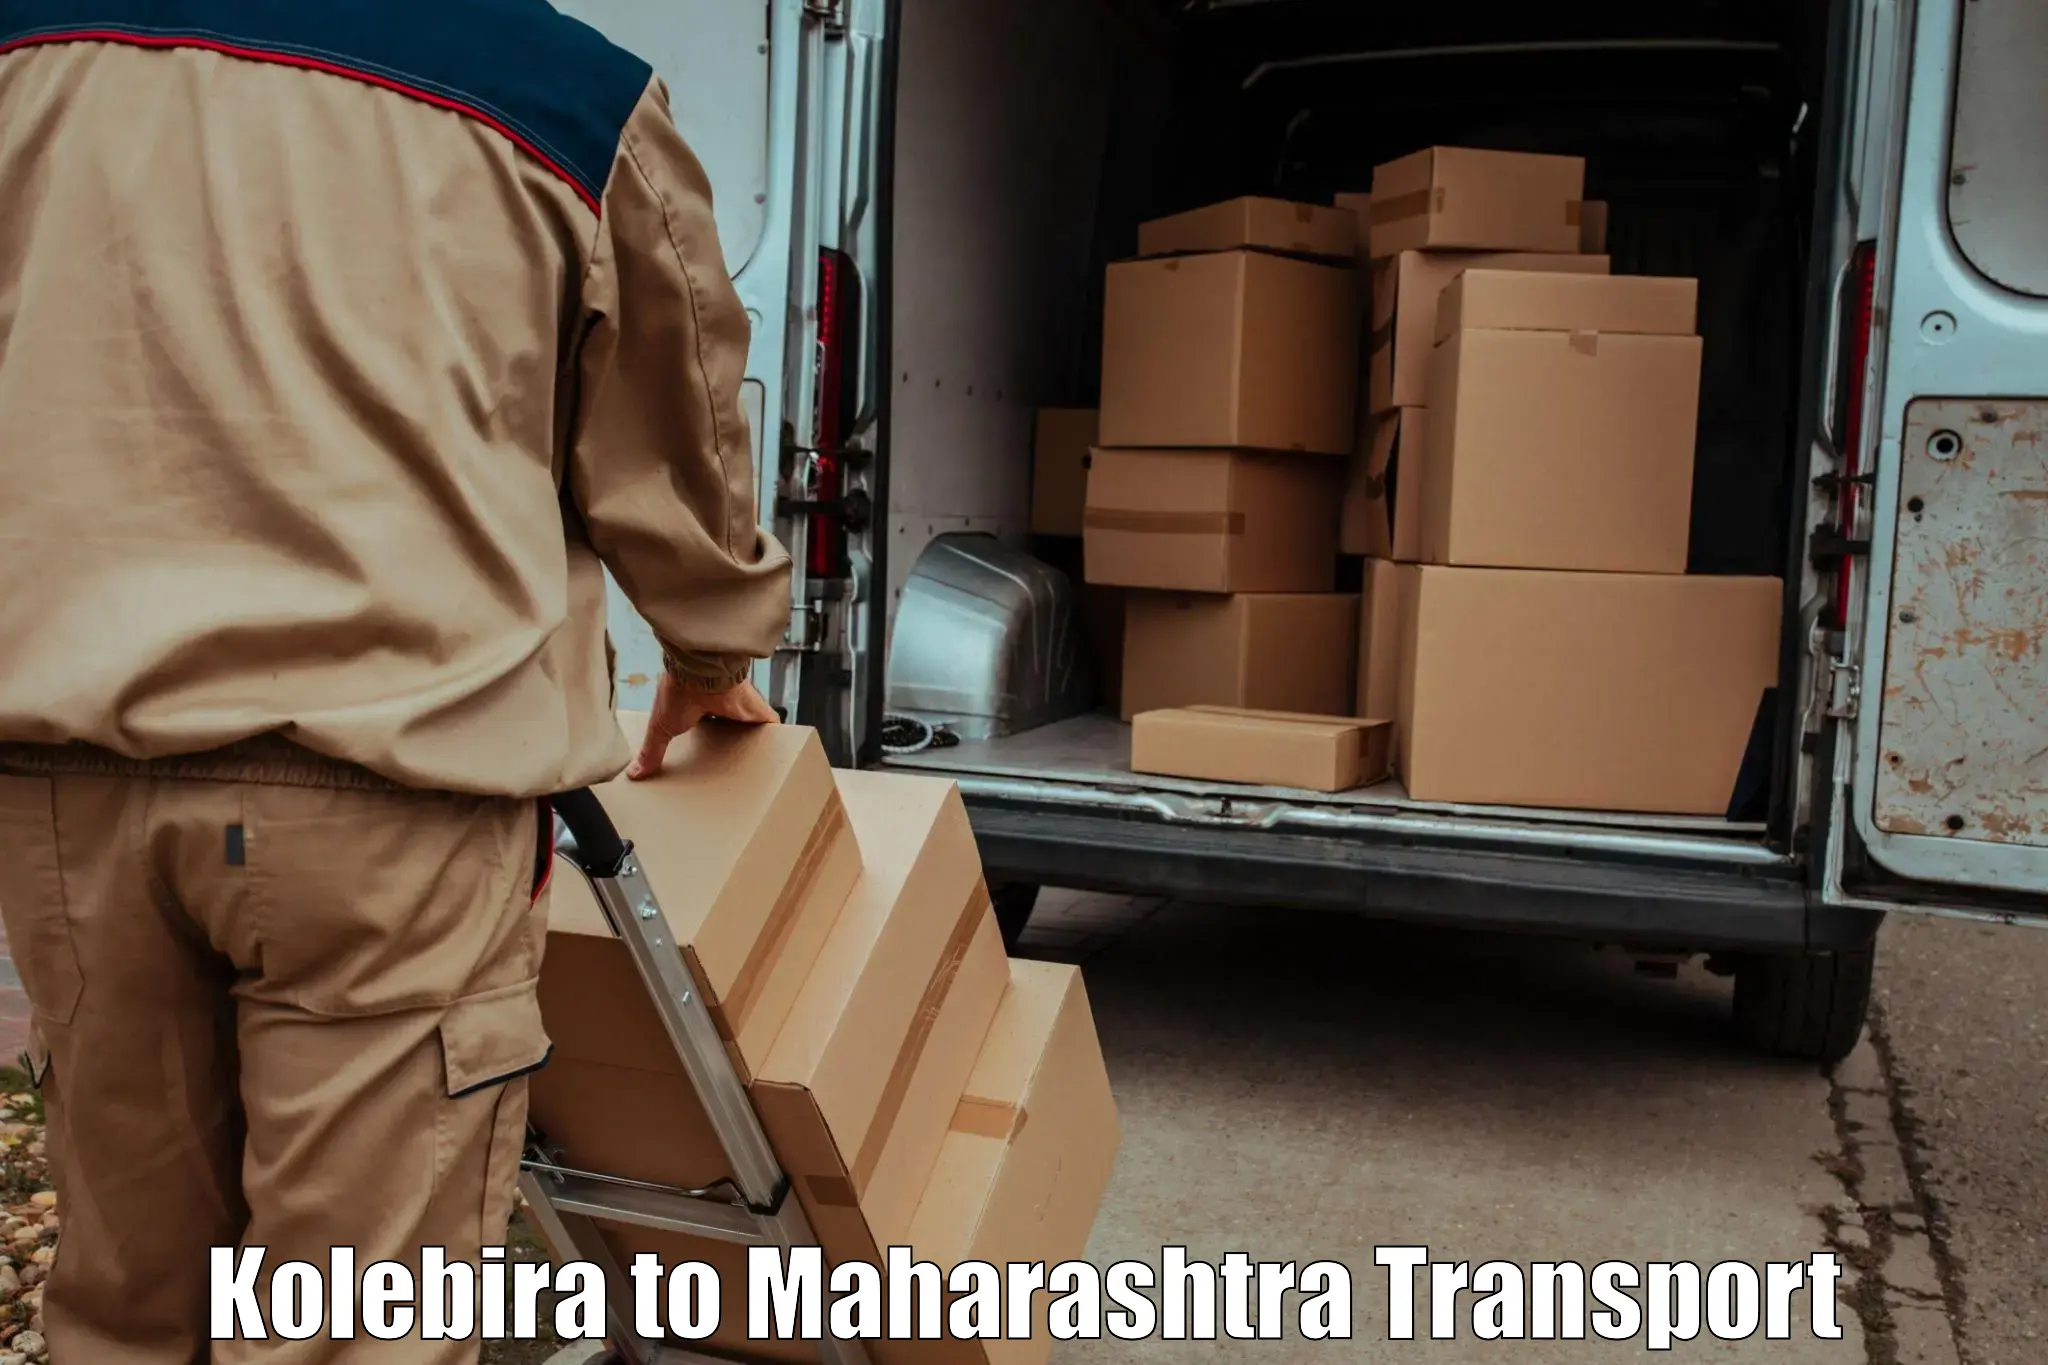 Cargo transportation services Kolebira to Maharashtra